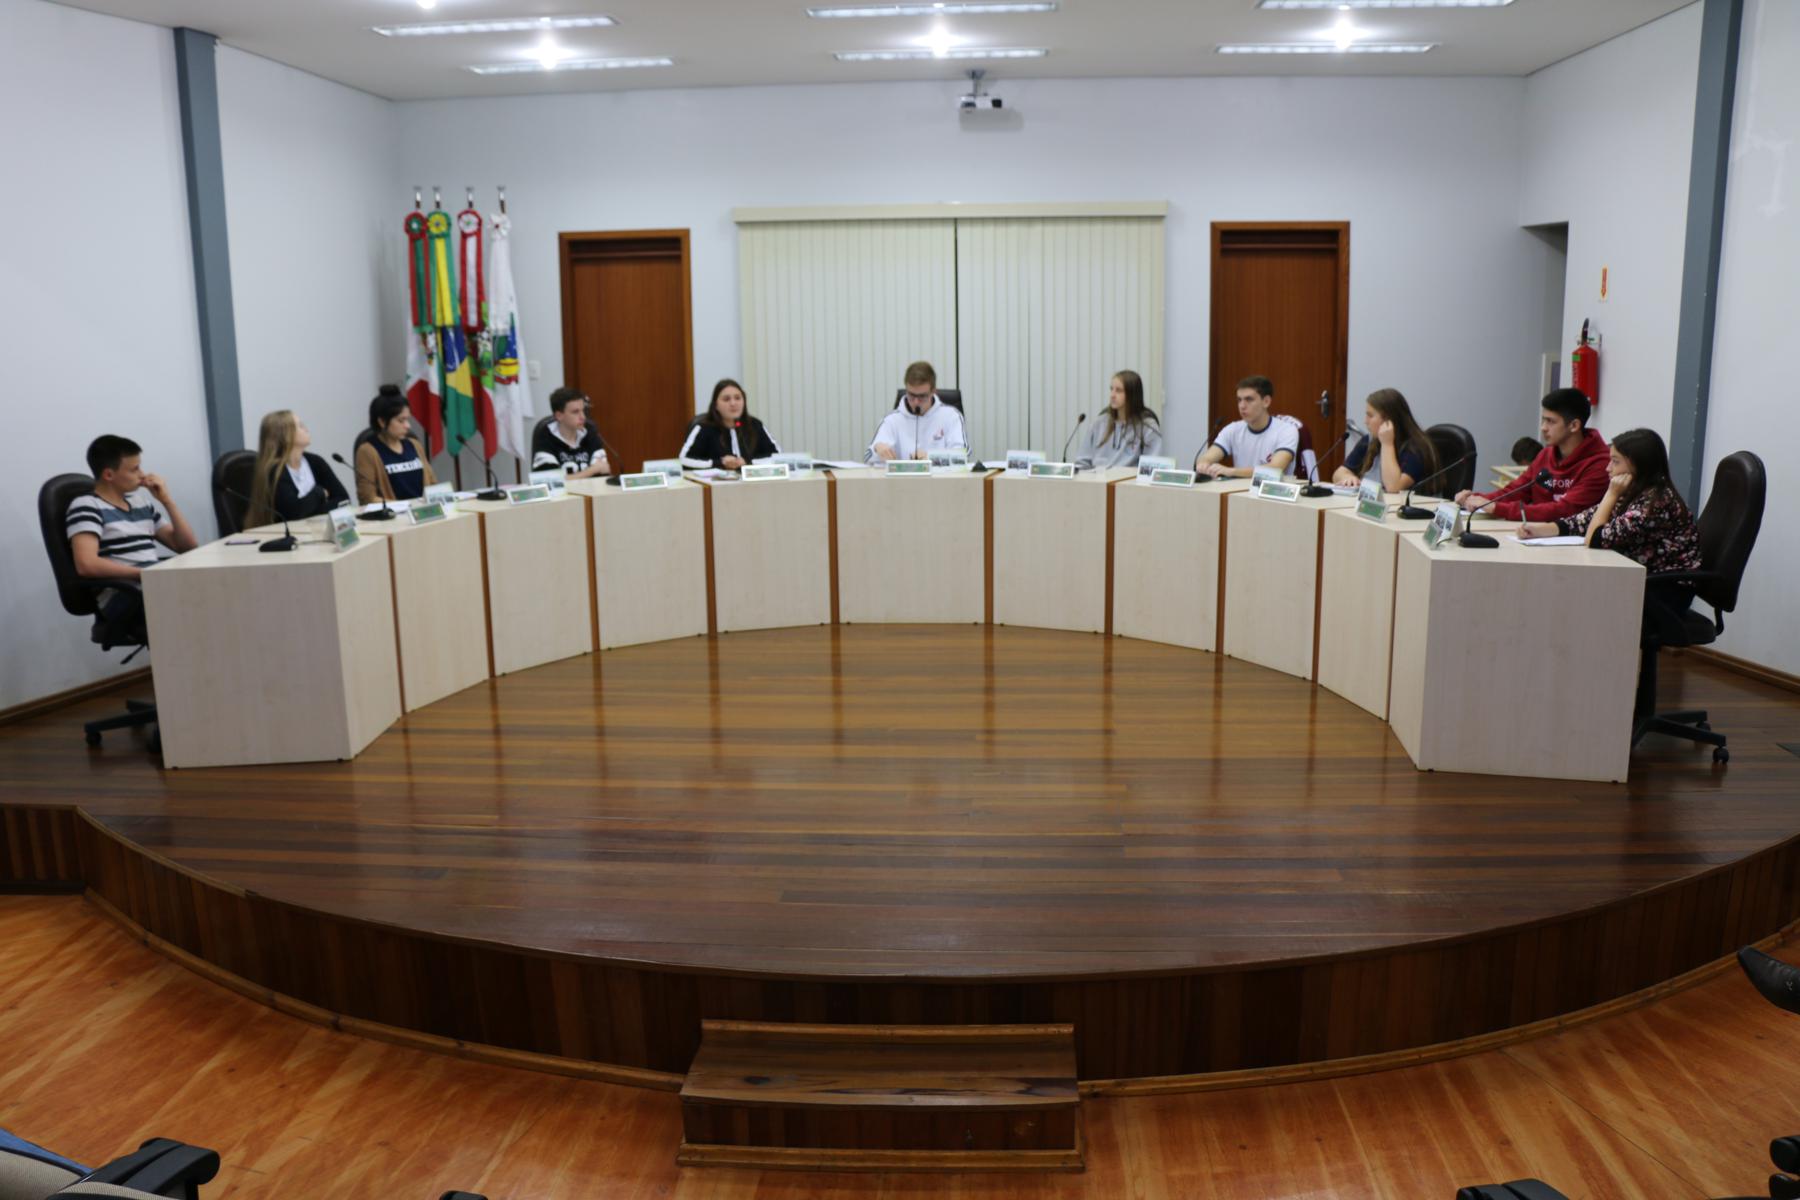 Câmara de Vereadores Mirim aprova requerimento e indicações por unanimidade